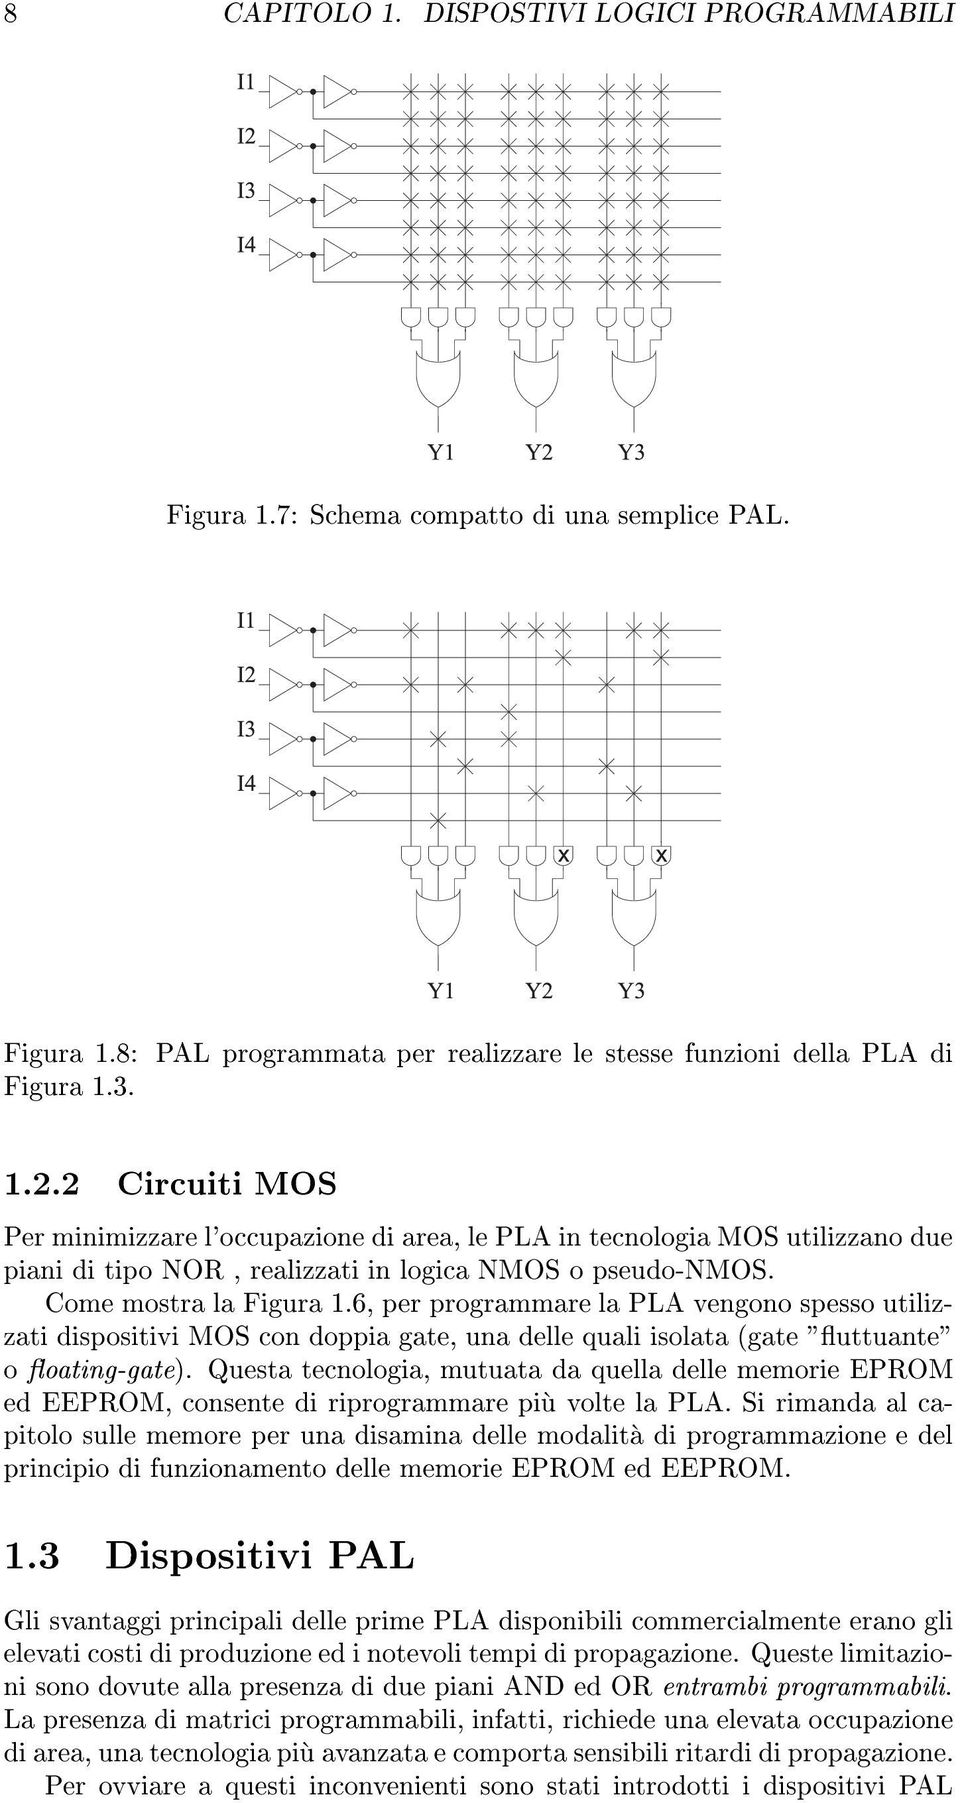 6, per programmare la PLA vengono spesso utilizzati dispositivi MOS con doppia gate, una delle quali isolata (gate "uttuante" o oating-gate).